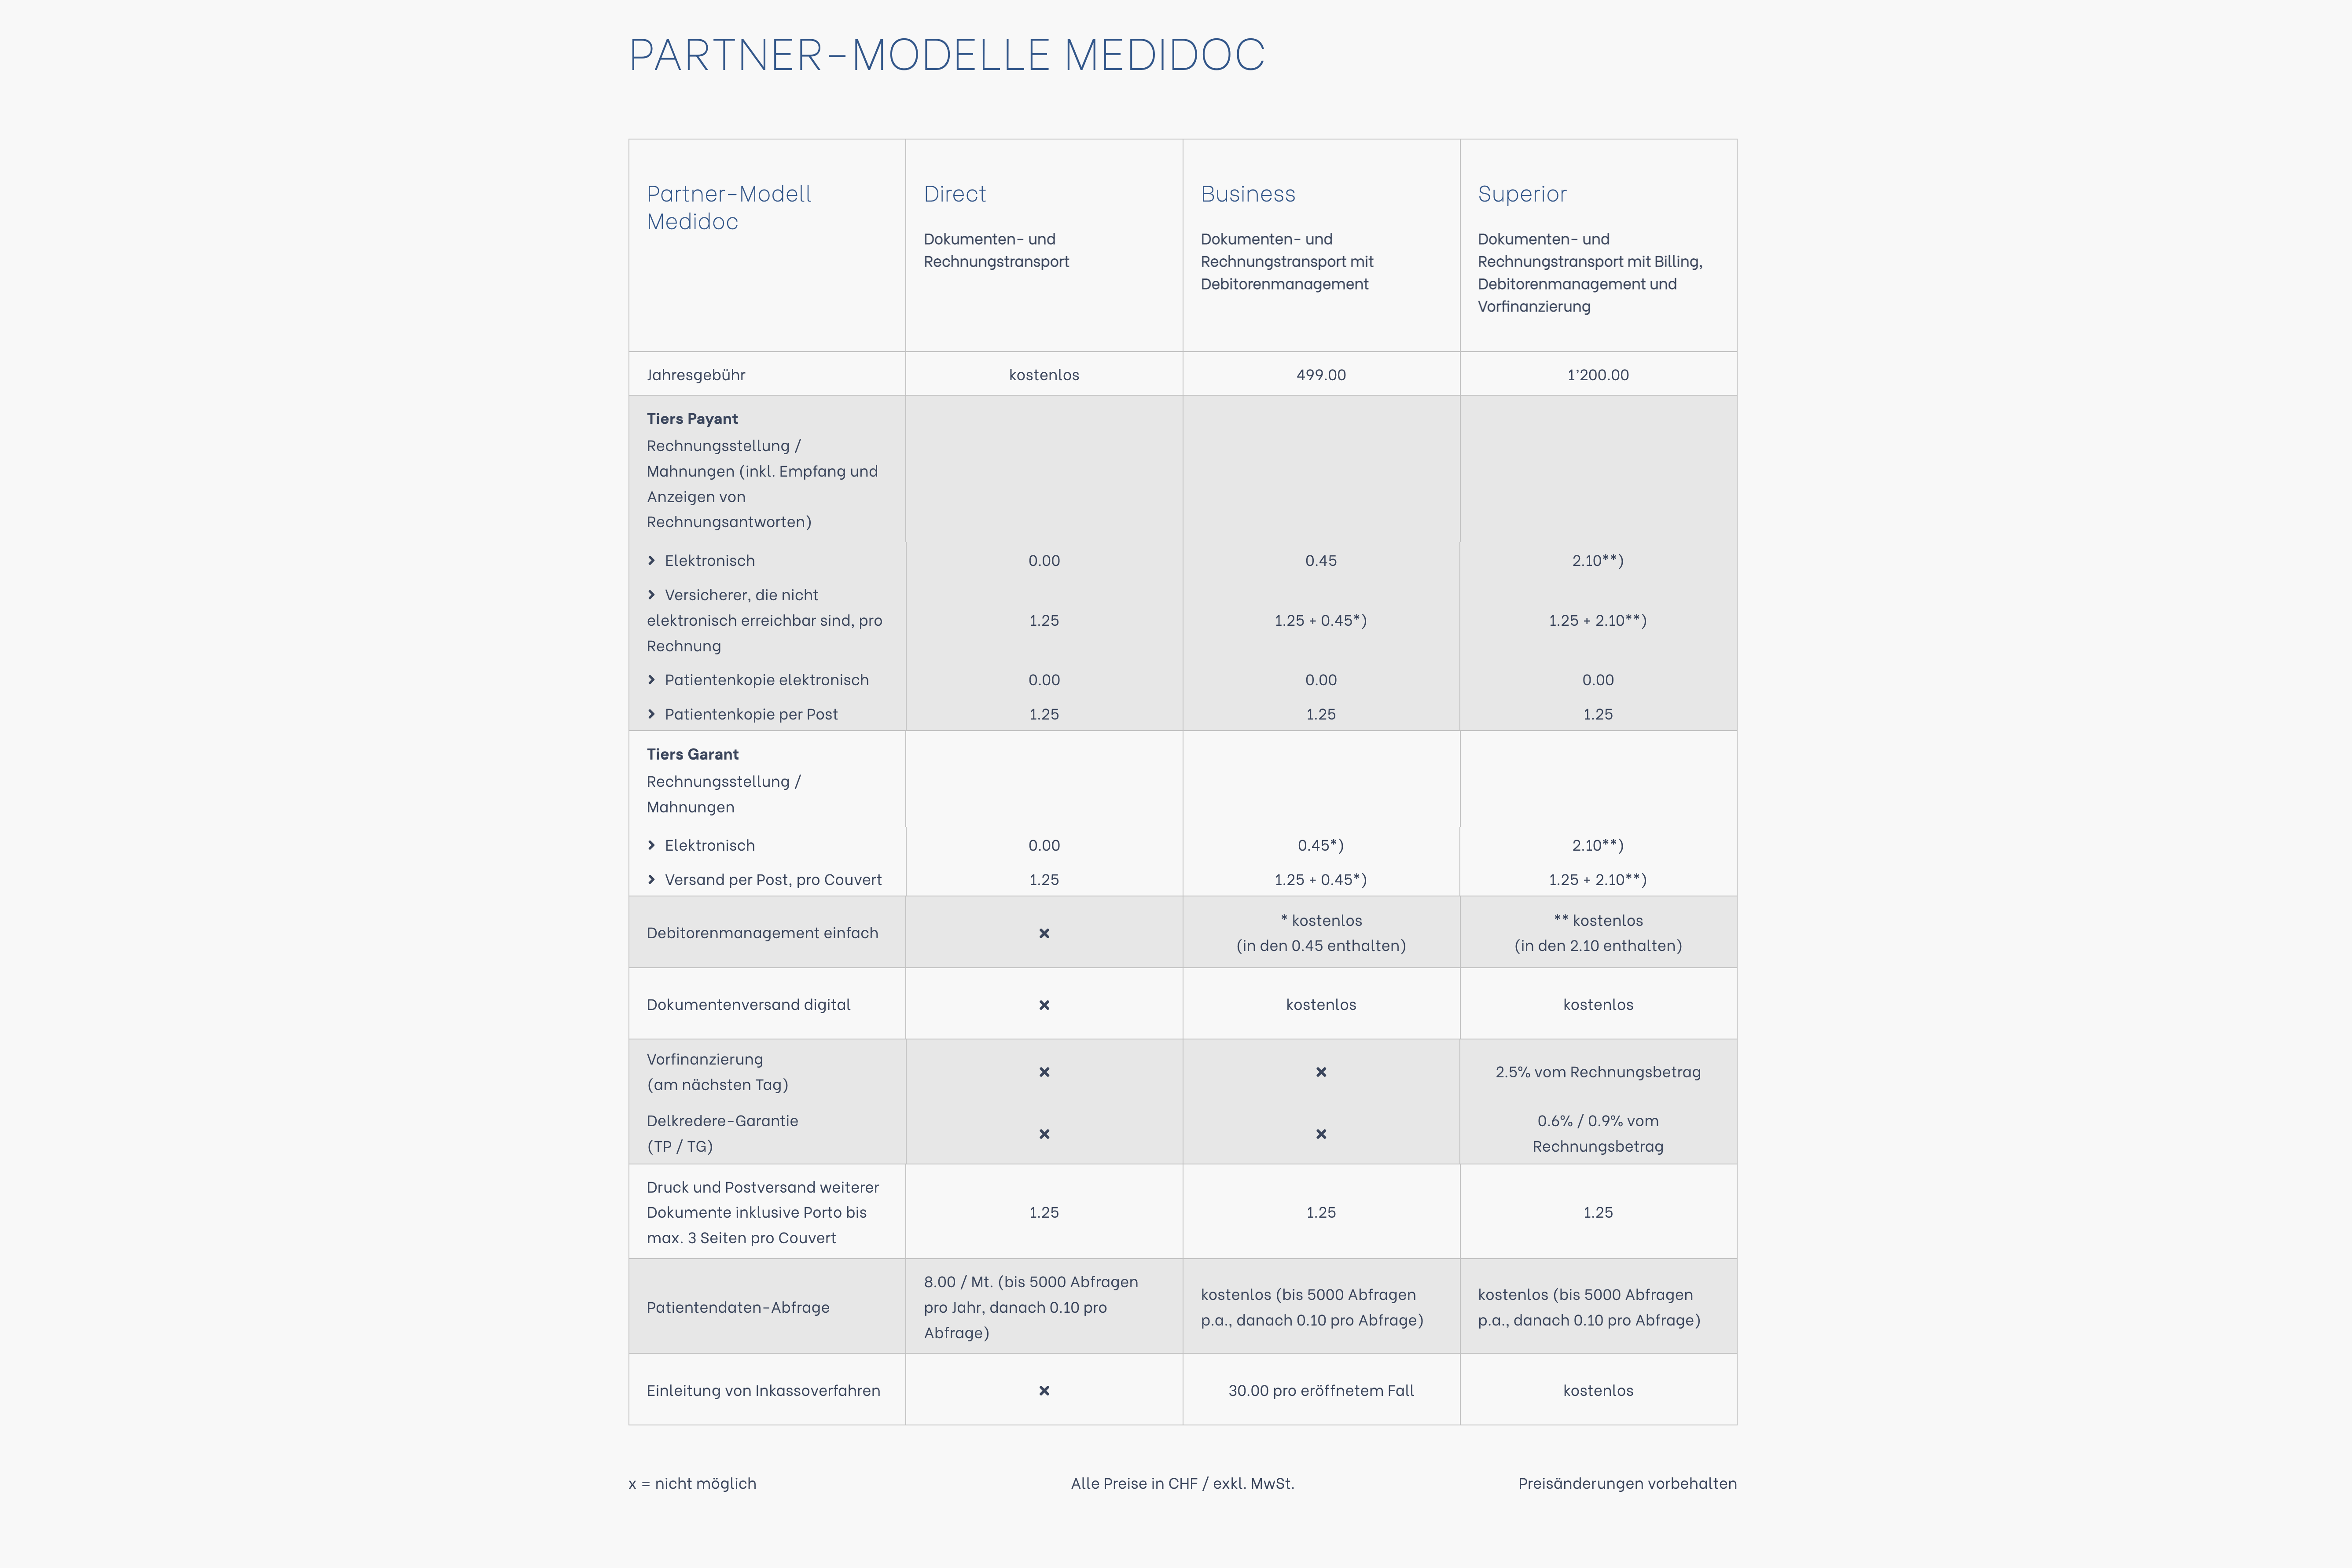 Partner-Modelle Medidoc